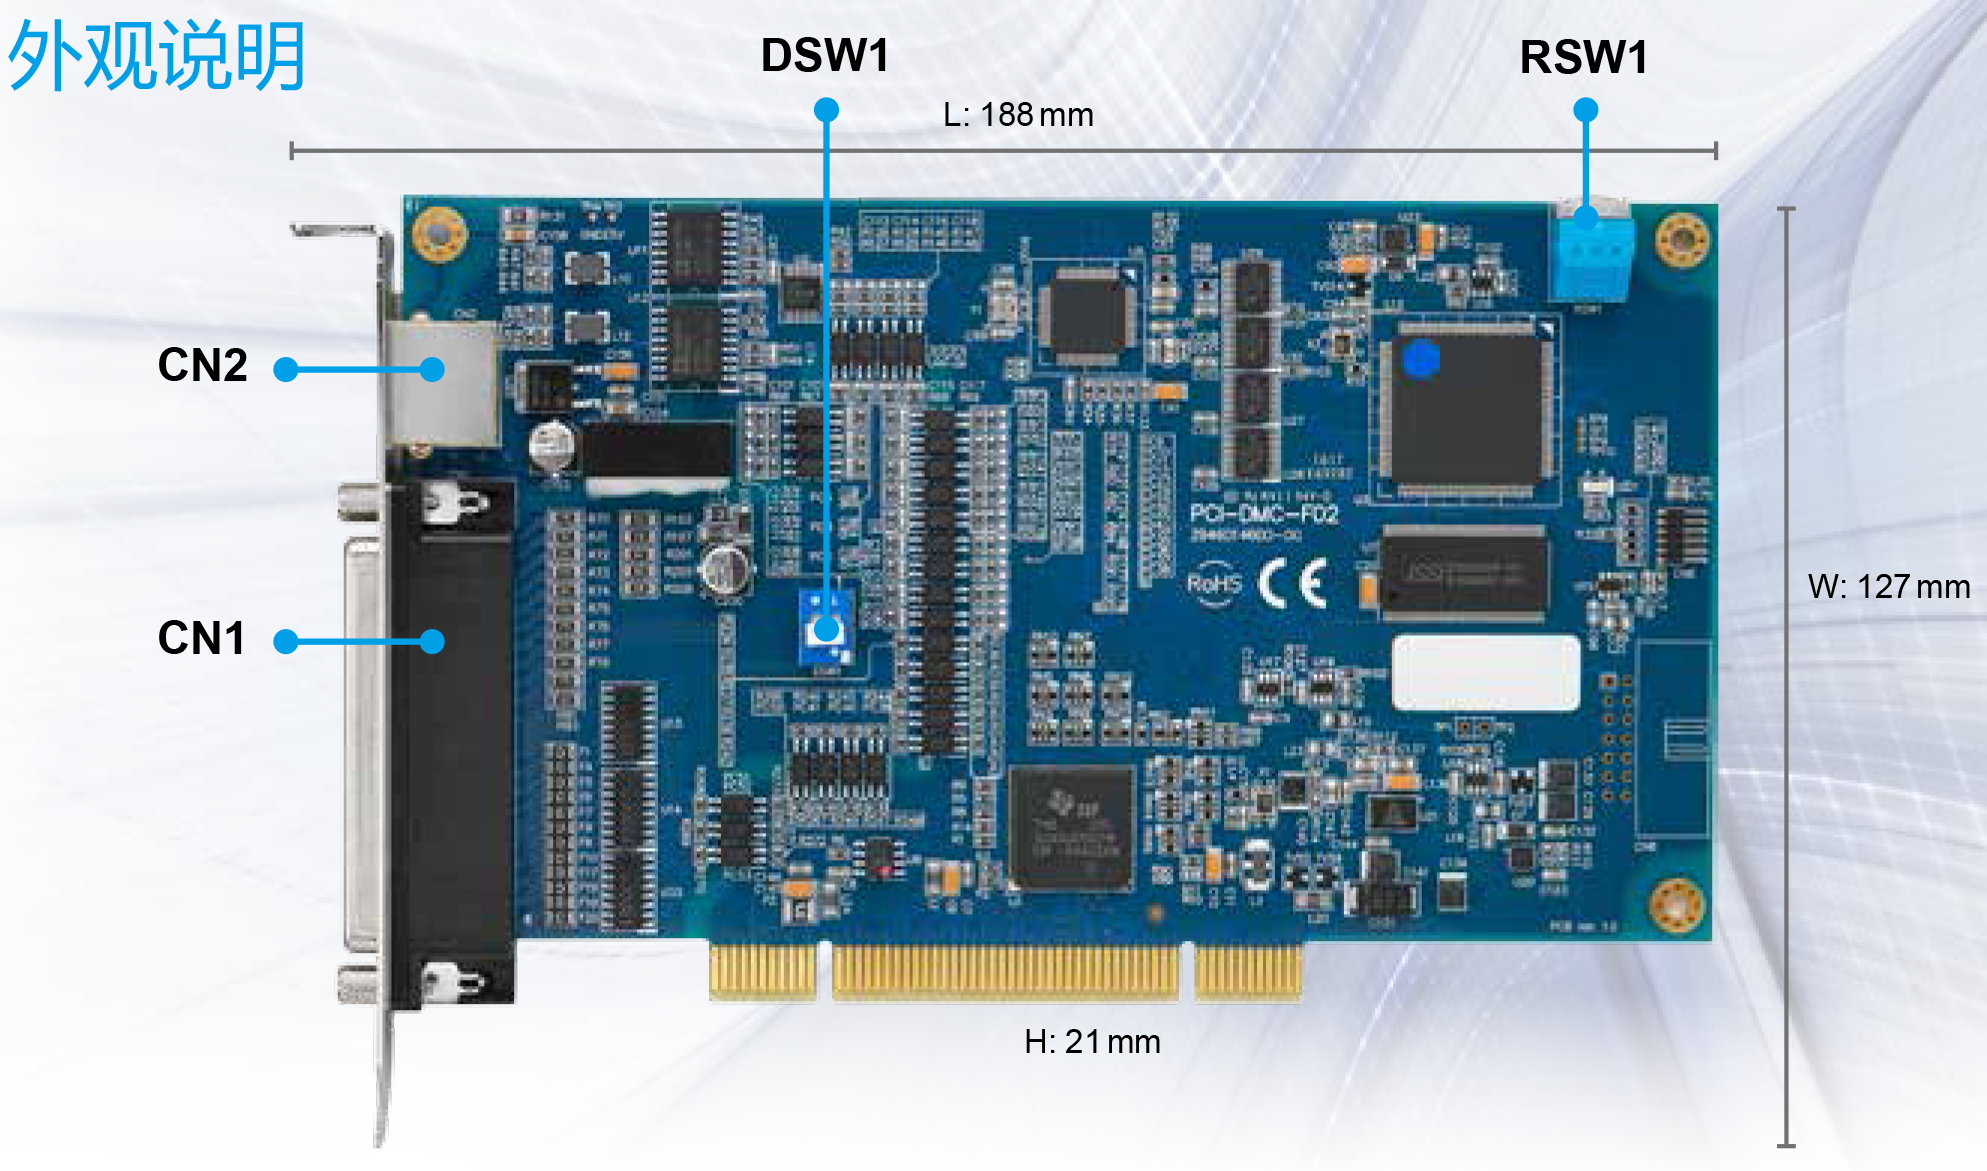 进阶型运动控制轴卡PCI-DMC-F02外观说明